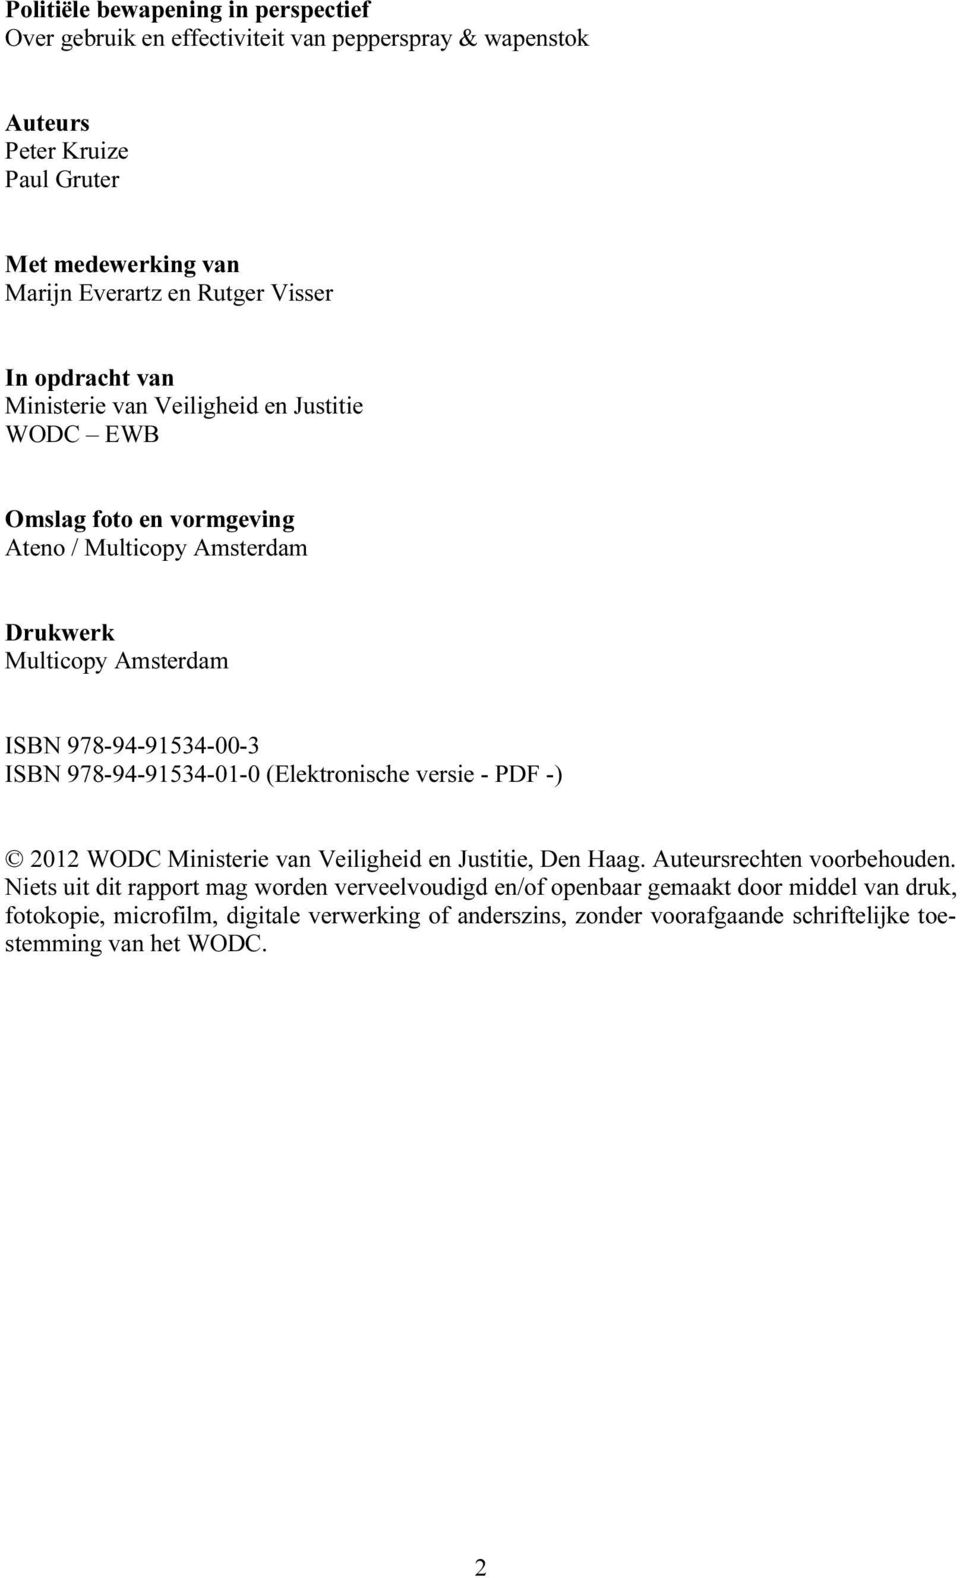 ISBN 978-94-91534-01-0 (Elektronische versie - PDF -) 2012 WODC Ministerie van Veiligheid en Justitie, Den Haag. Auteursrechten voorbehouden.